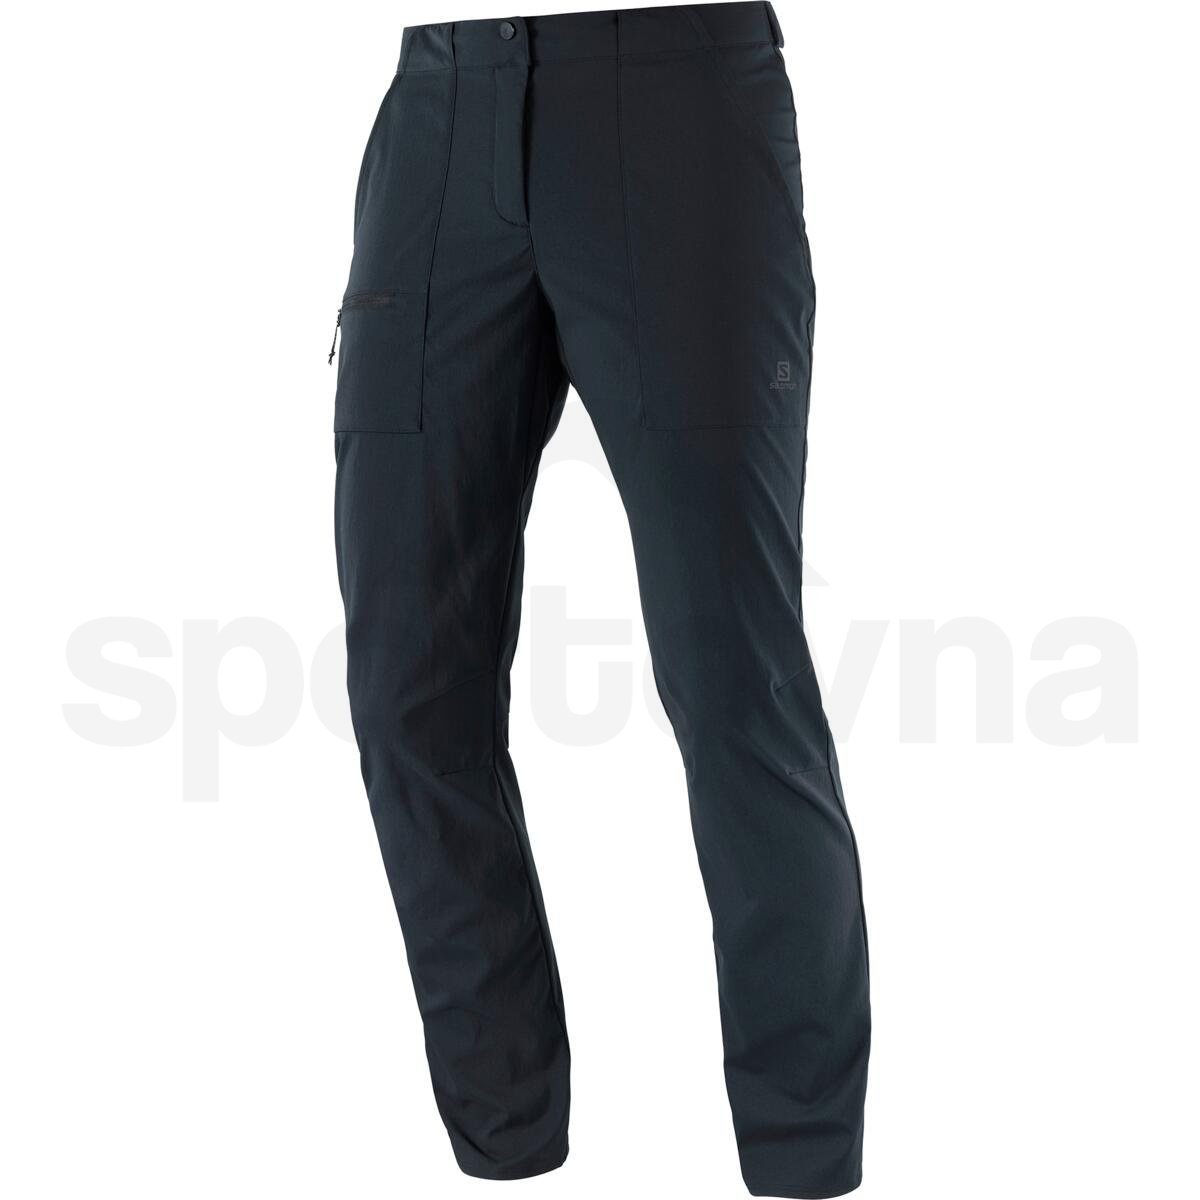 Kalhoty Salomon OUTRACK PANTS W - černá (prodloužená délka)